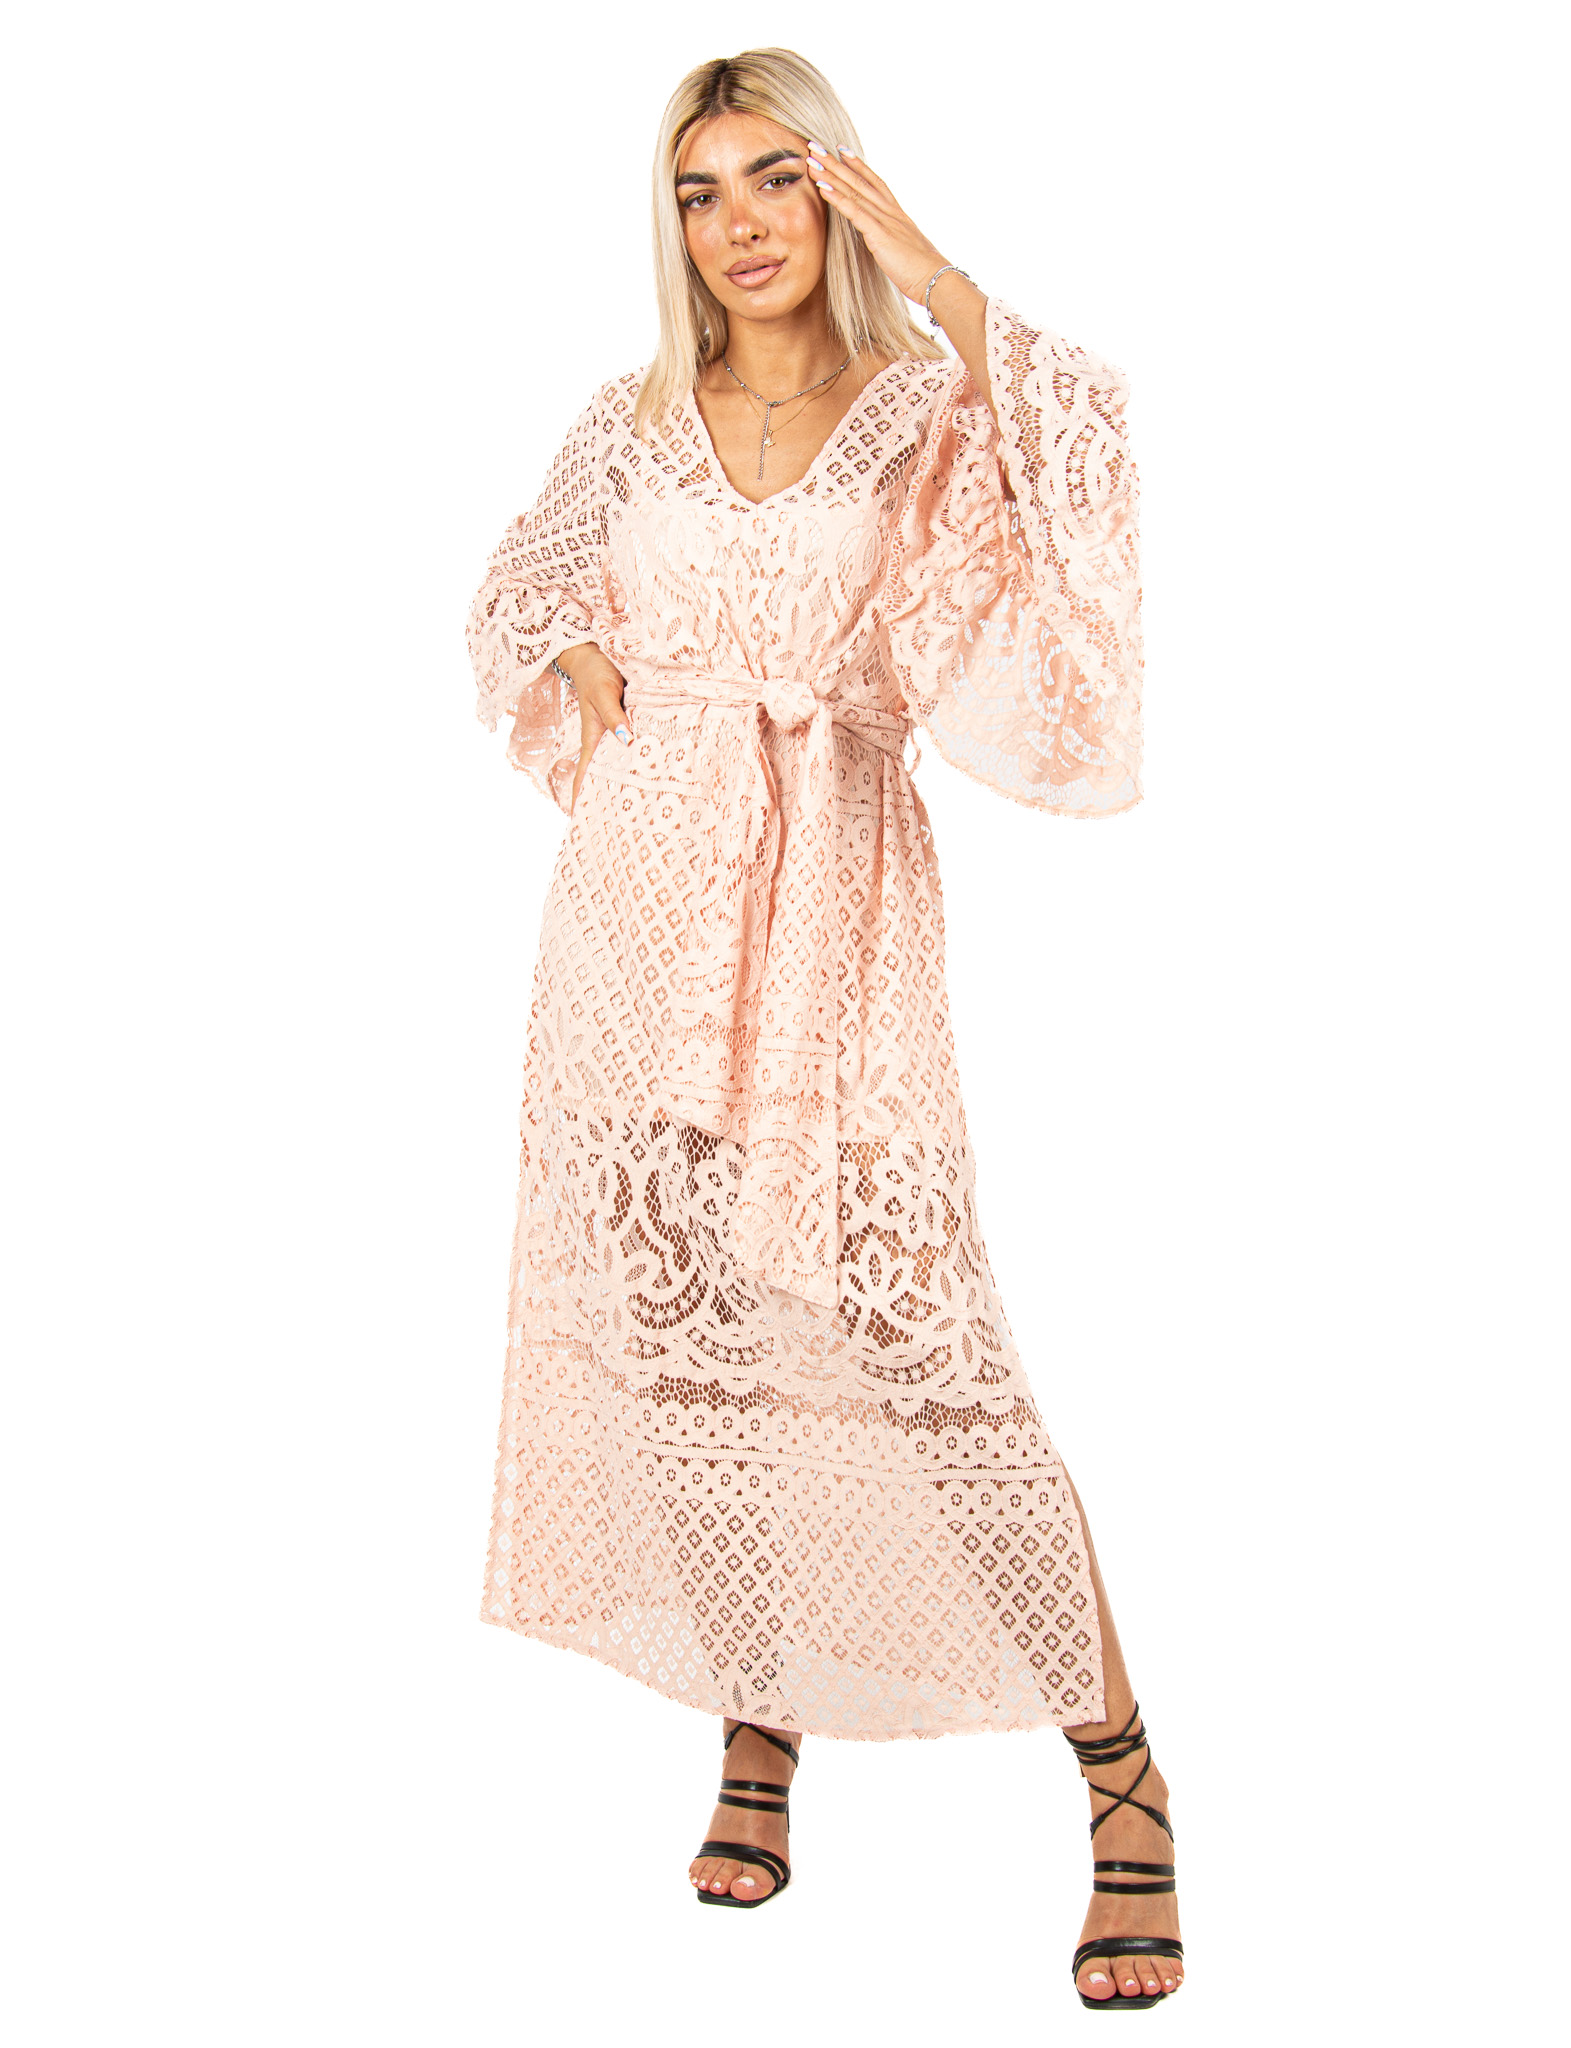 Φόρεμα Δαντέλα με Καμπάνα Μανίκια Ροζ | EllenBoutique